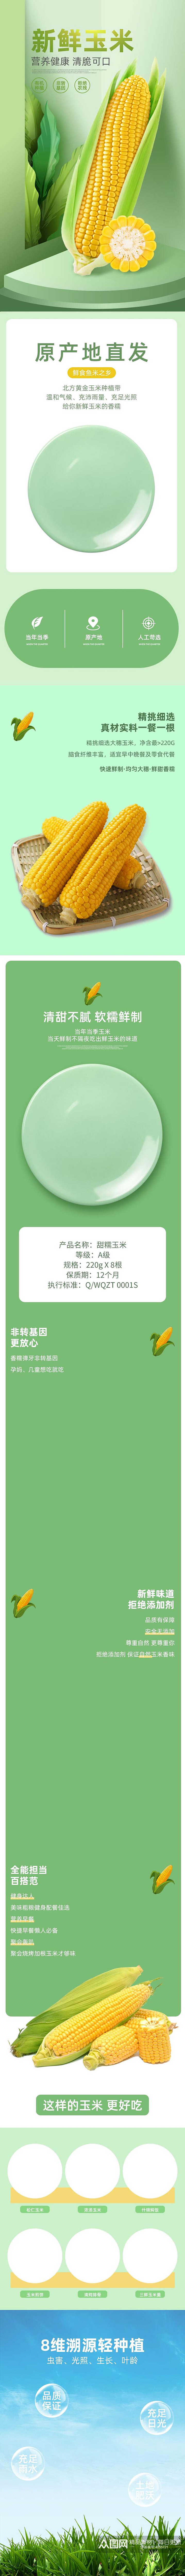 新鲜玉米蔬菜手机版详情页素材